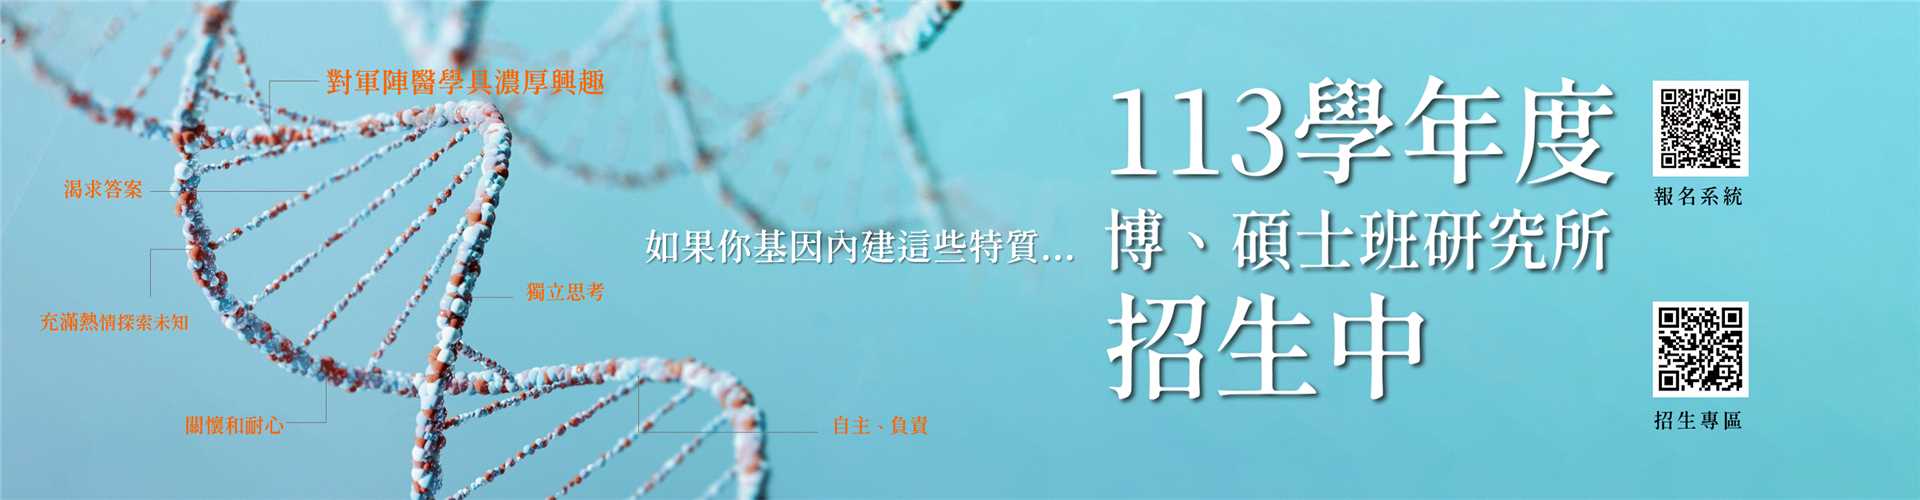 113研究所招生banner